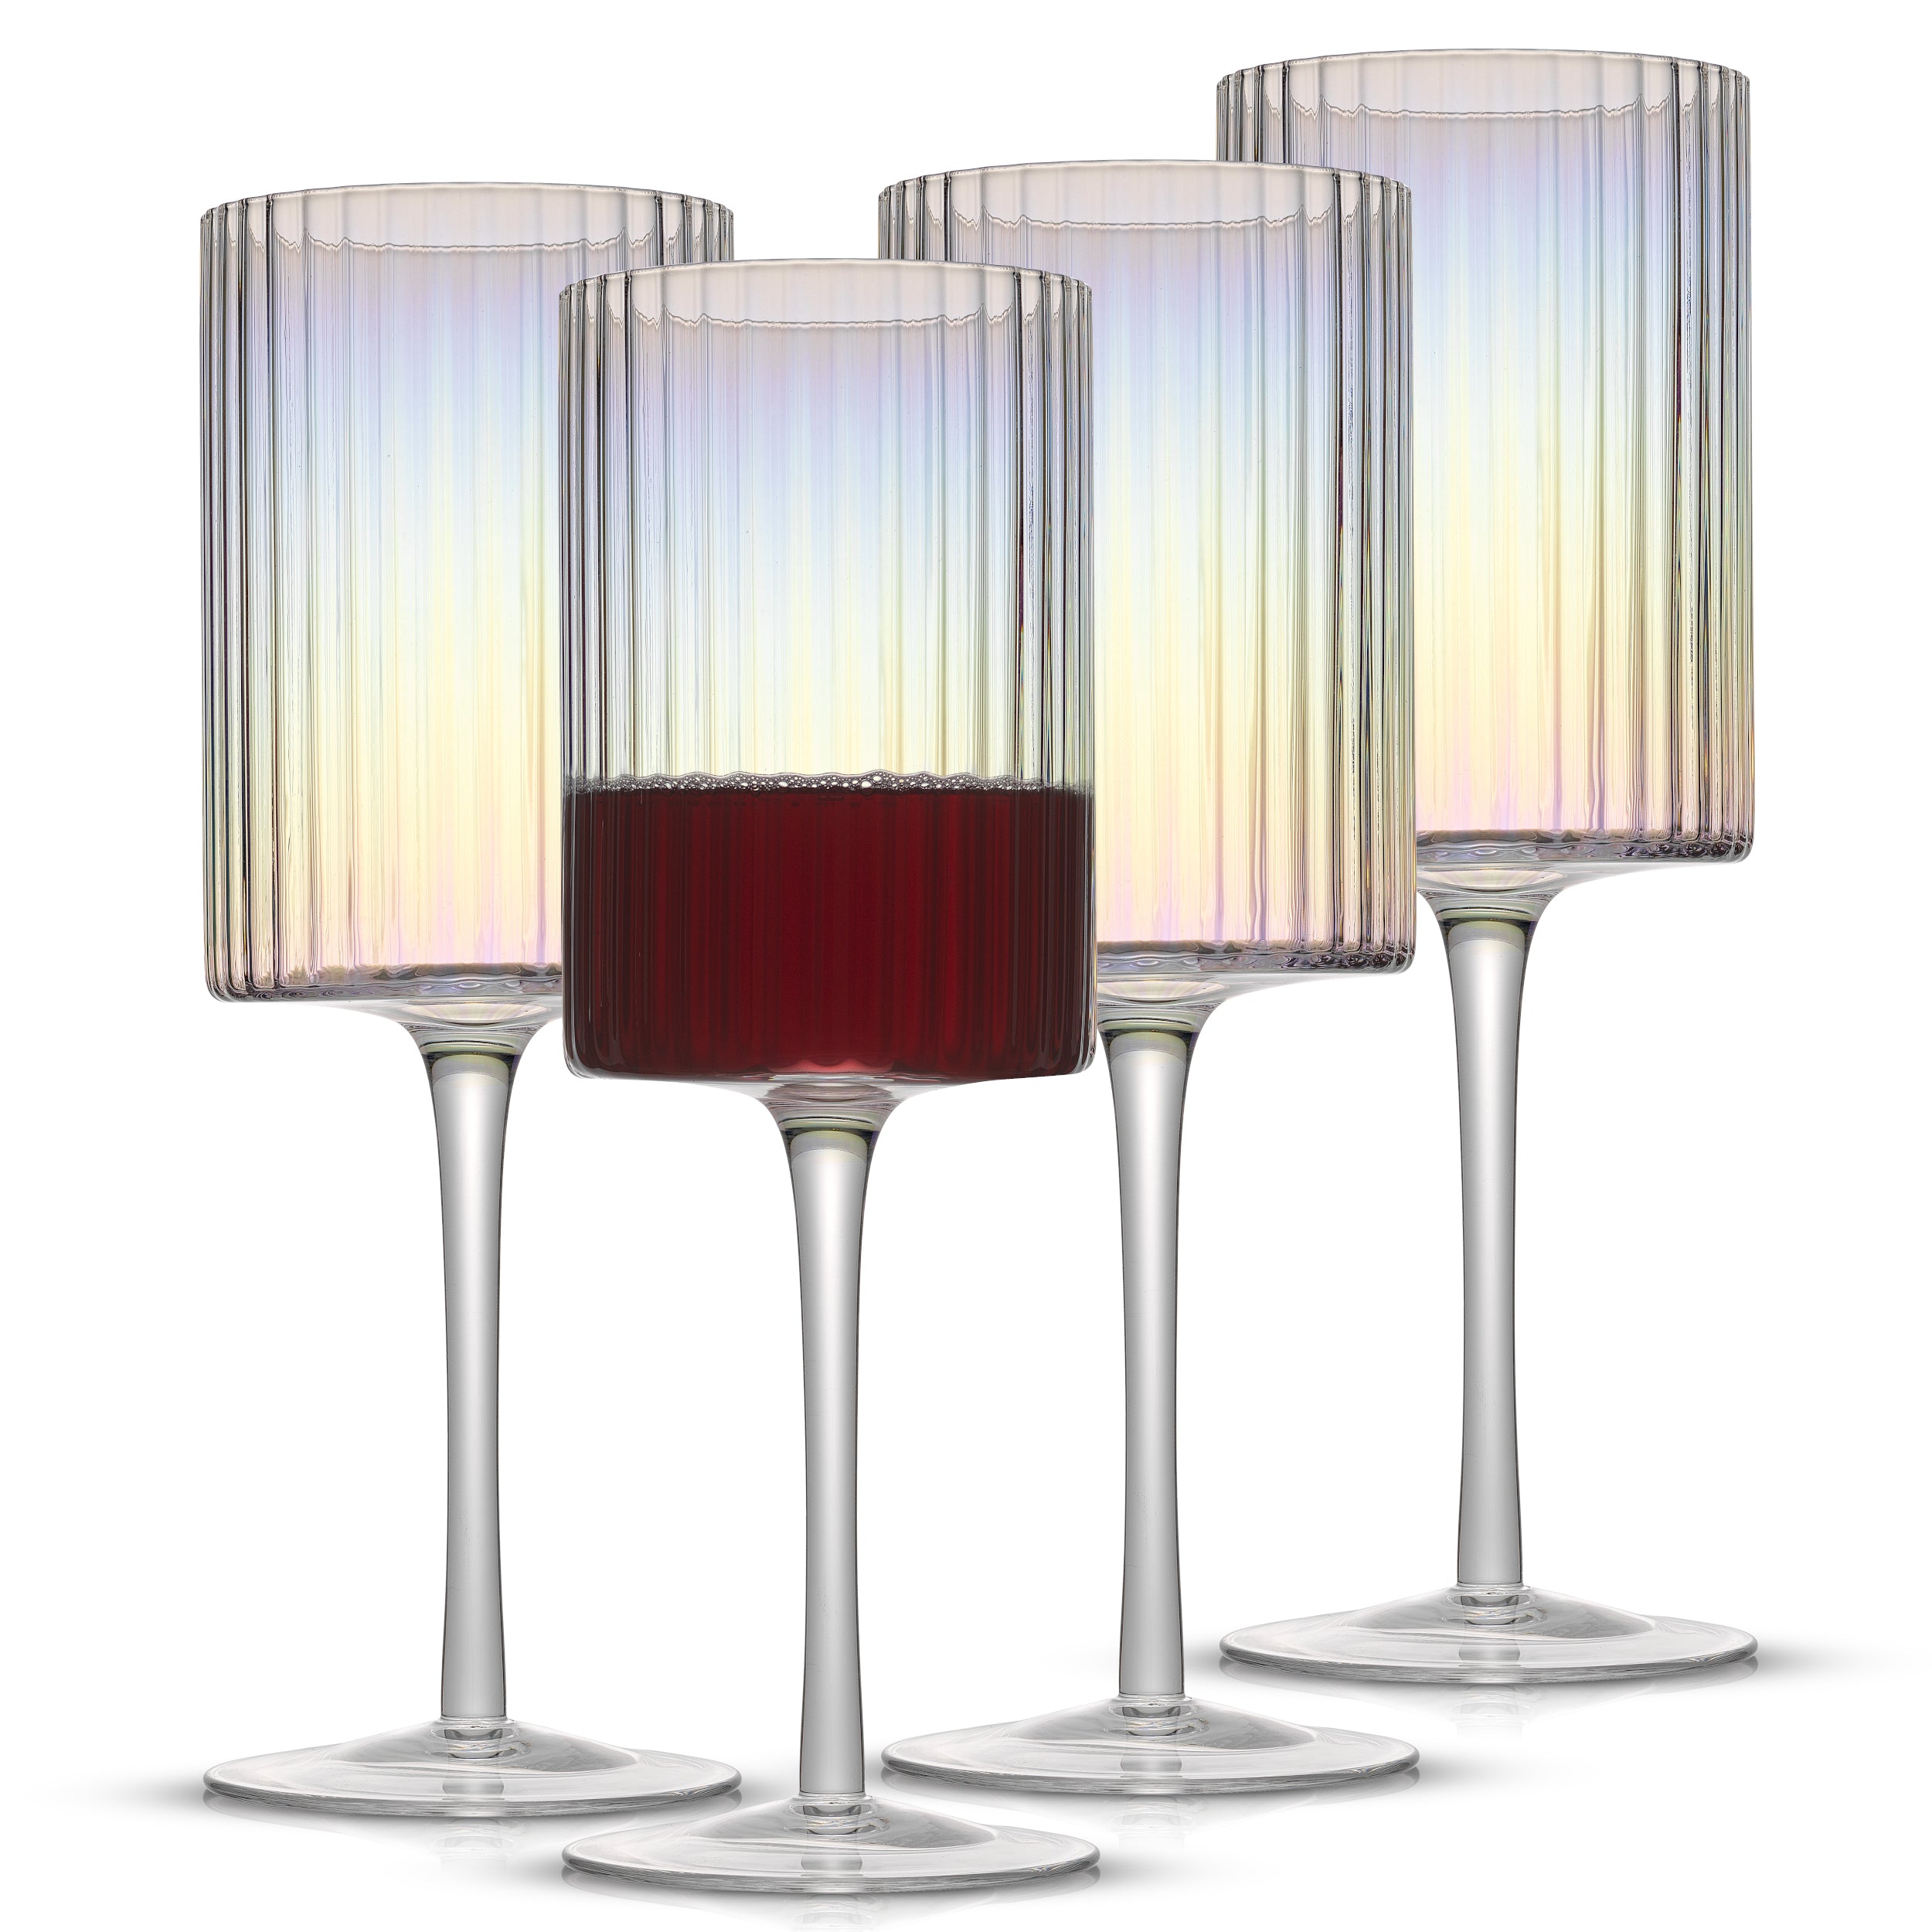 Christian Siriano New York Chroma Iridescent Red Wine Glass - 17.5 oz